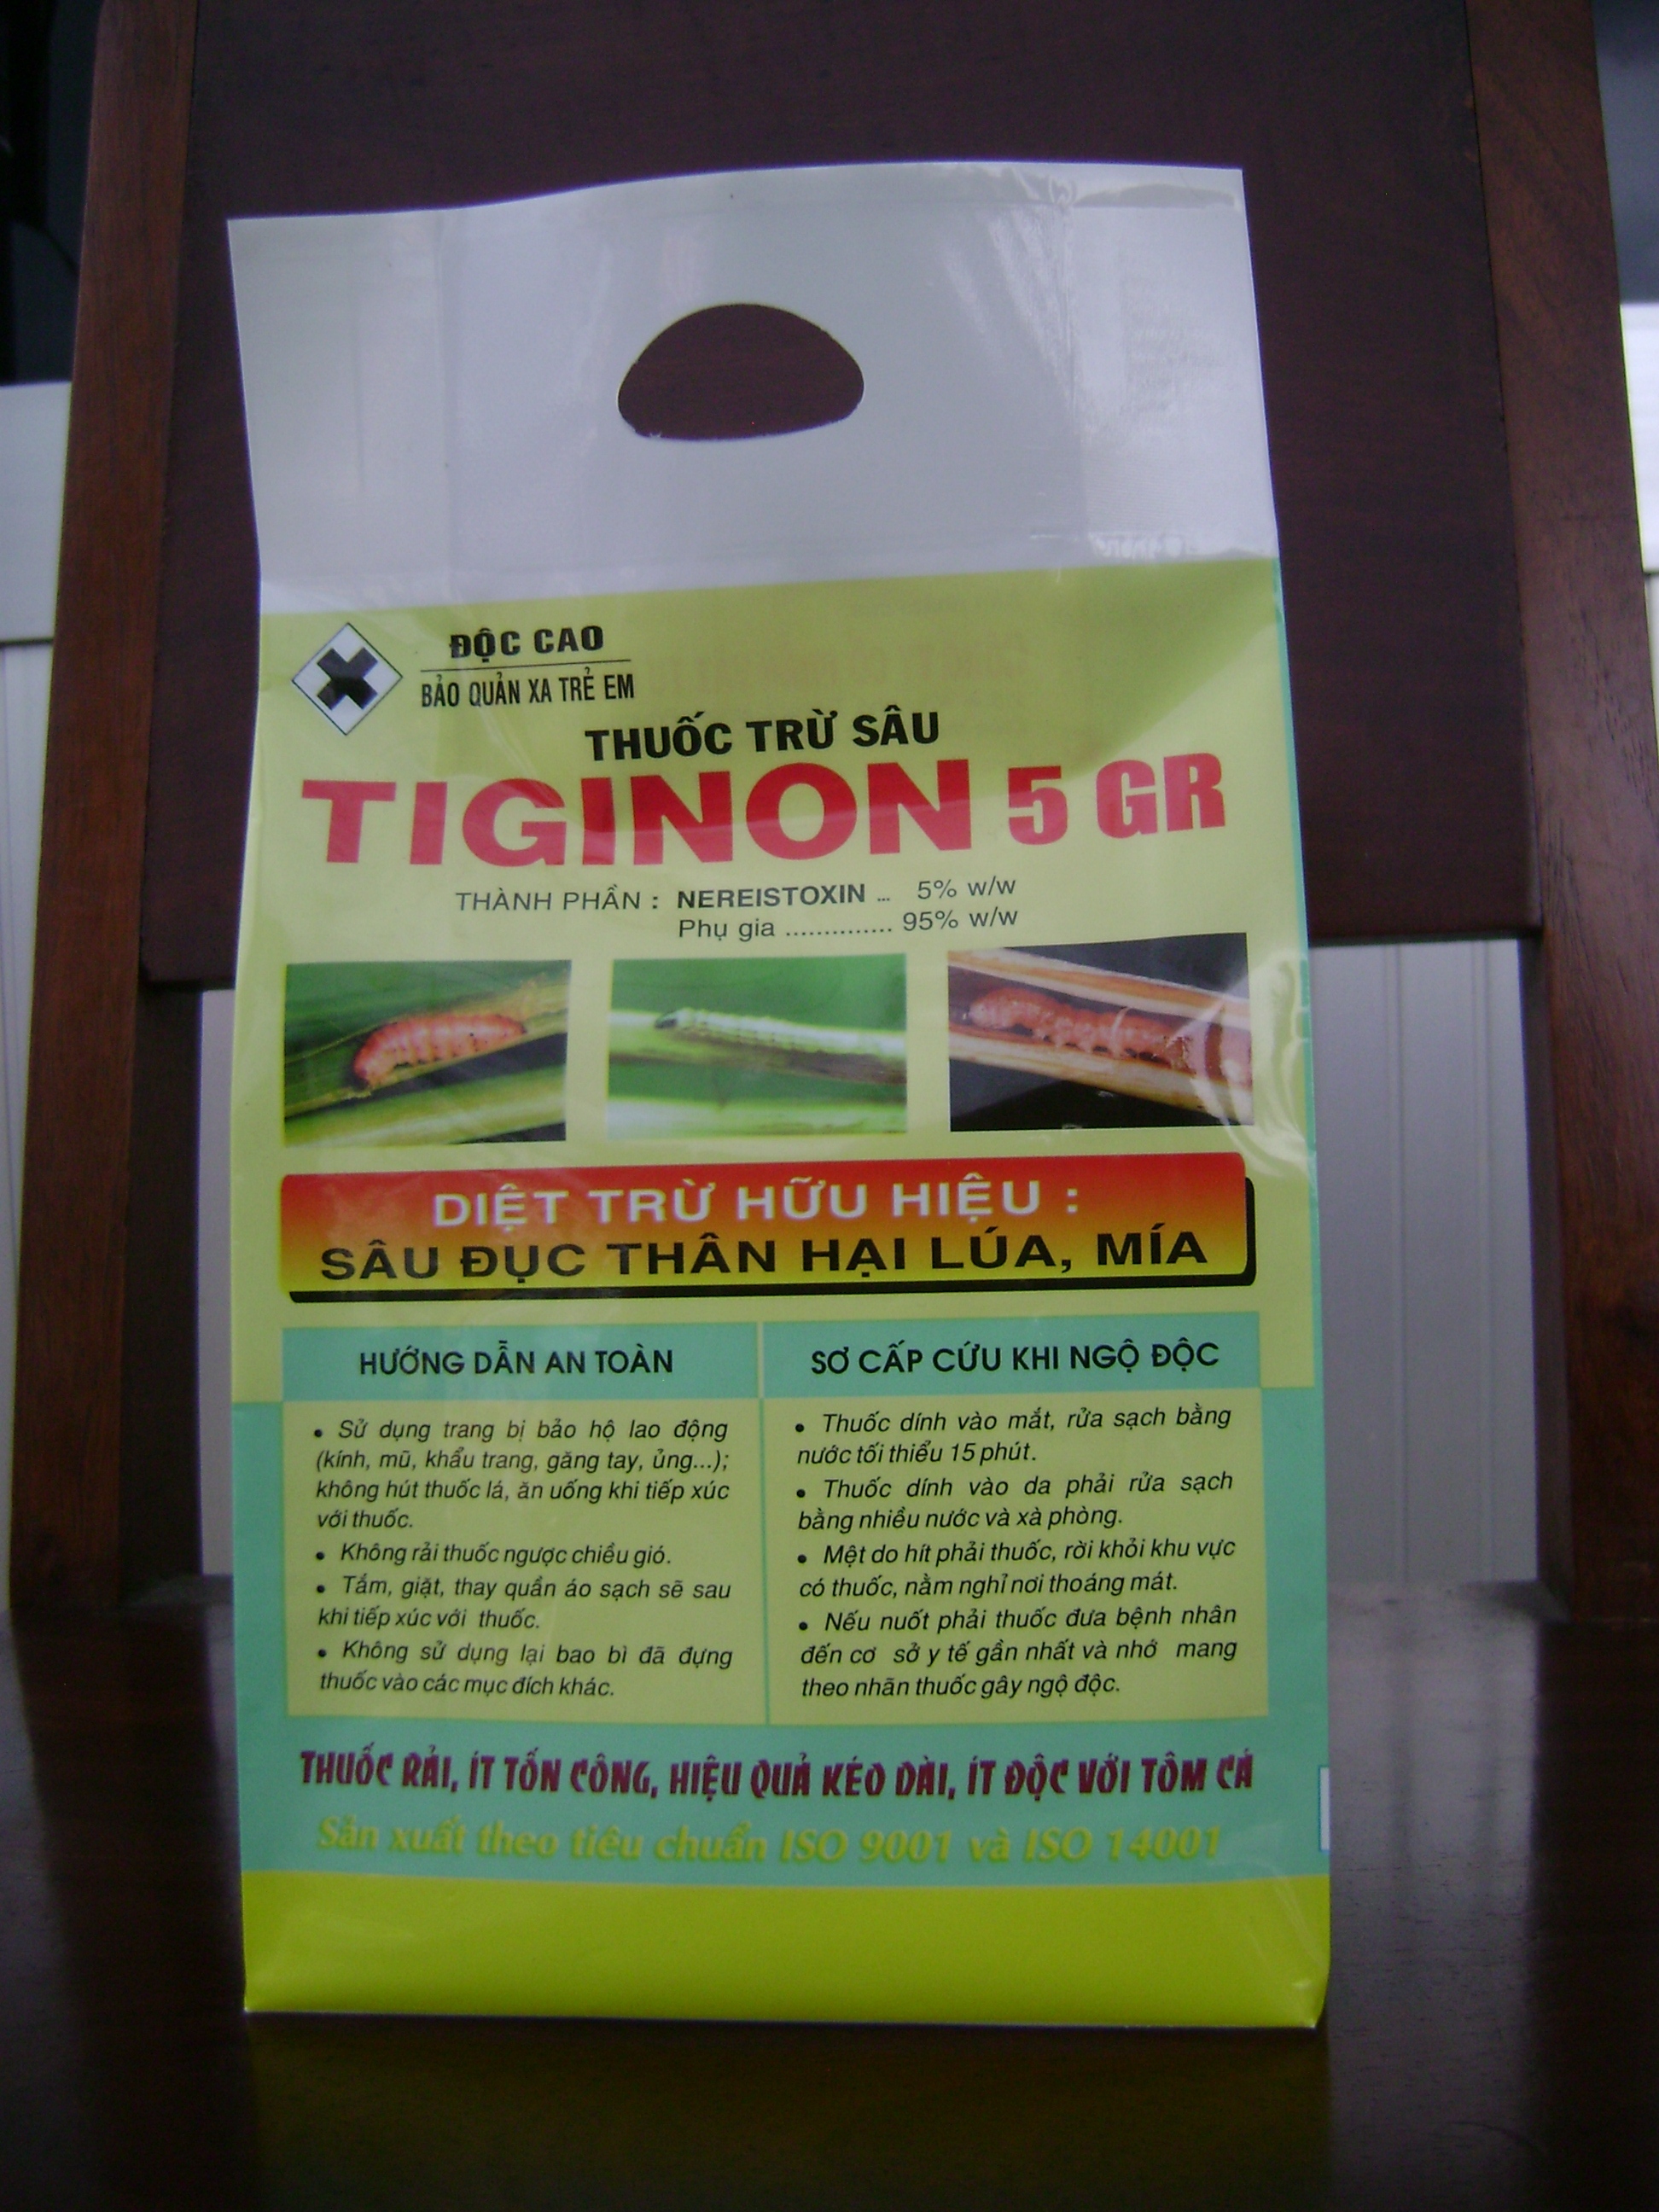 TIGINON 5 GR